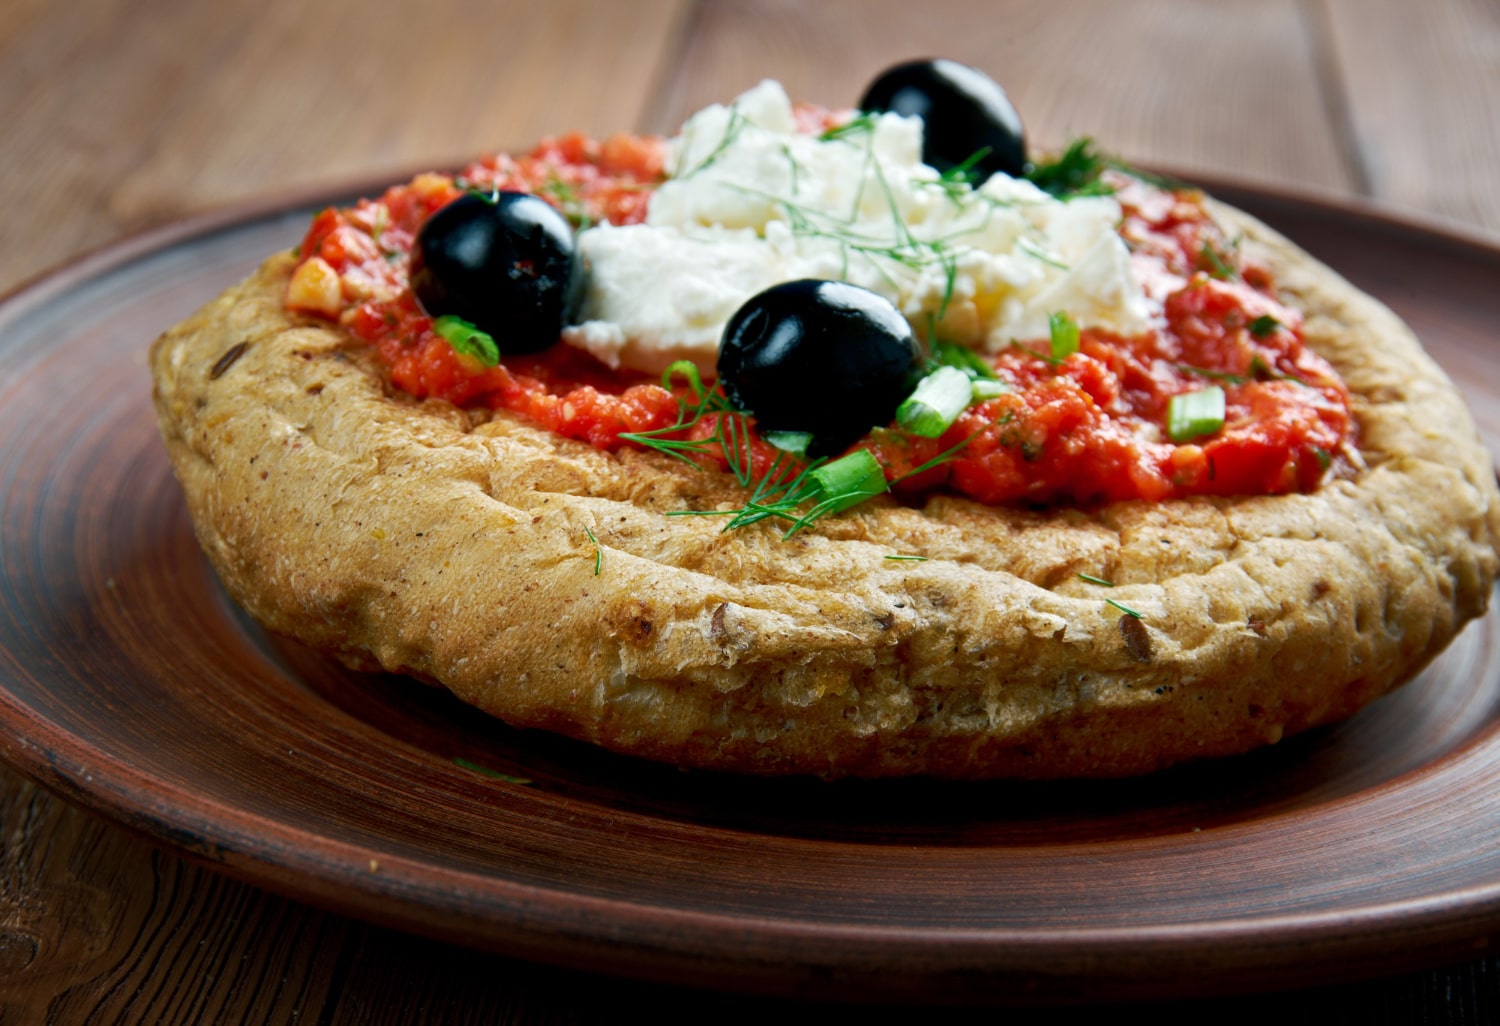 Dakos crétois : tranches de pain garnies de tomates, feta et huile d'olive à la mode méditerranéenne